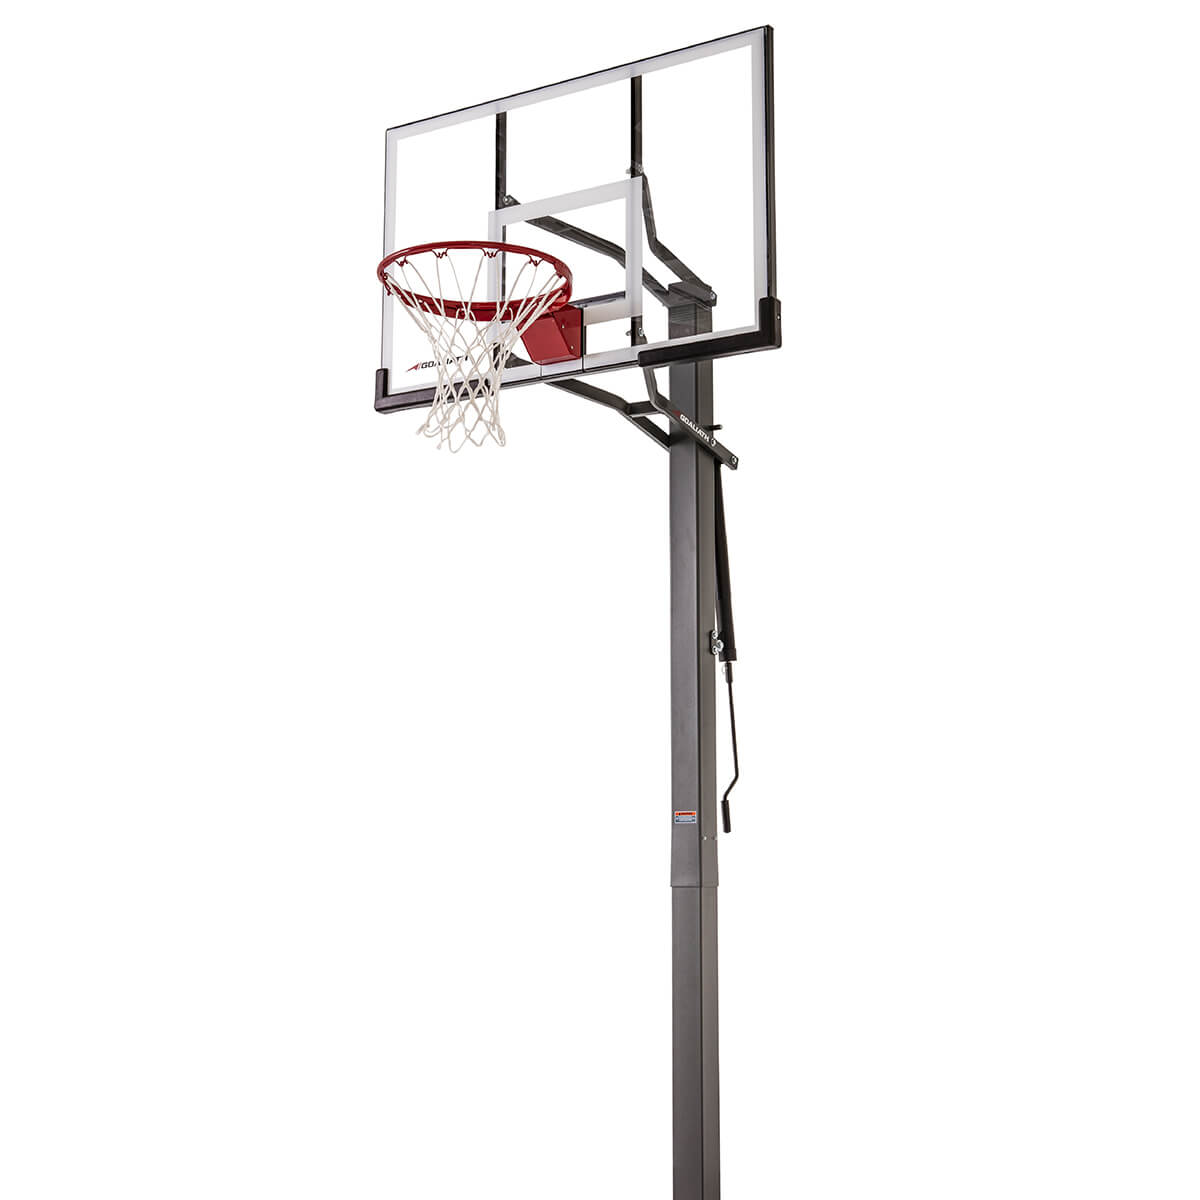 Goaliath GB50 InGround online Basketballanlage kaufen